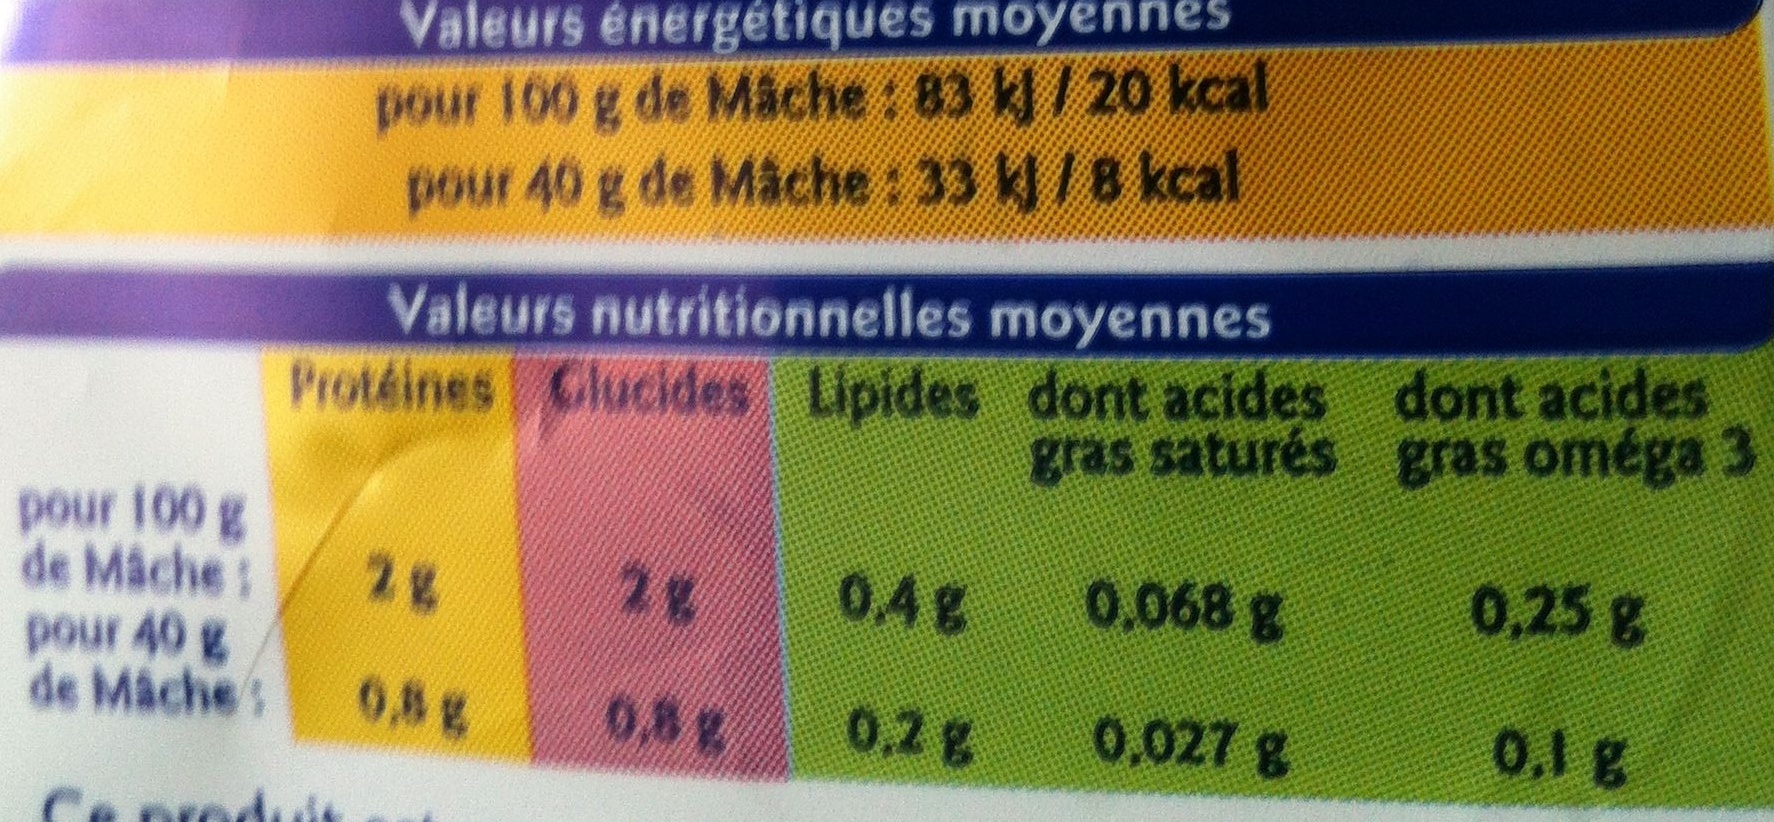 Mâche - Nutrition facts - fr